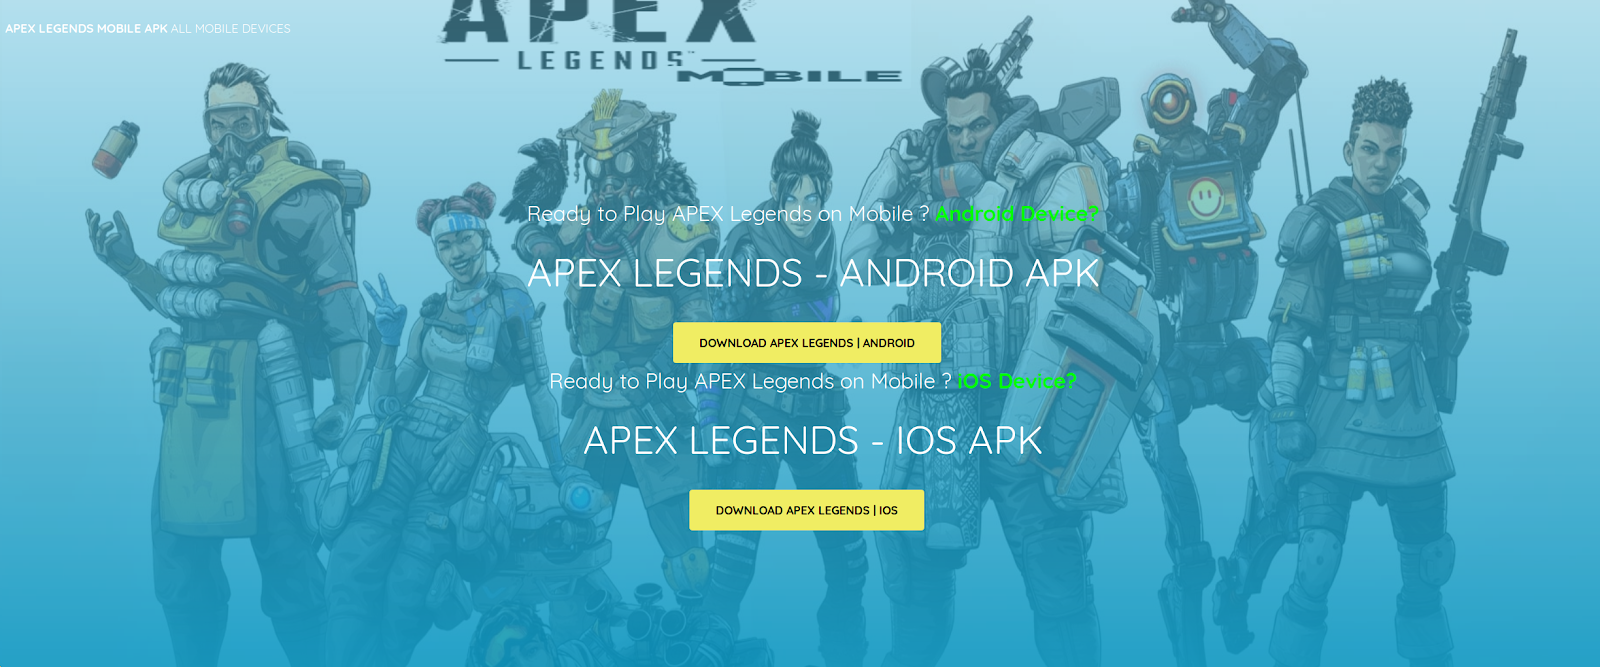 เกม Apex Legends ยังไม่มีในสมาร์ทโฟน